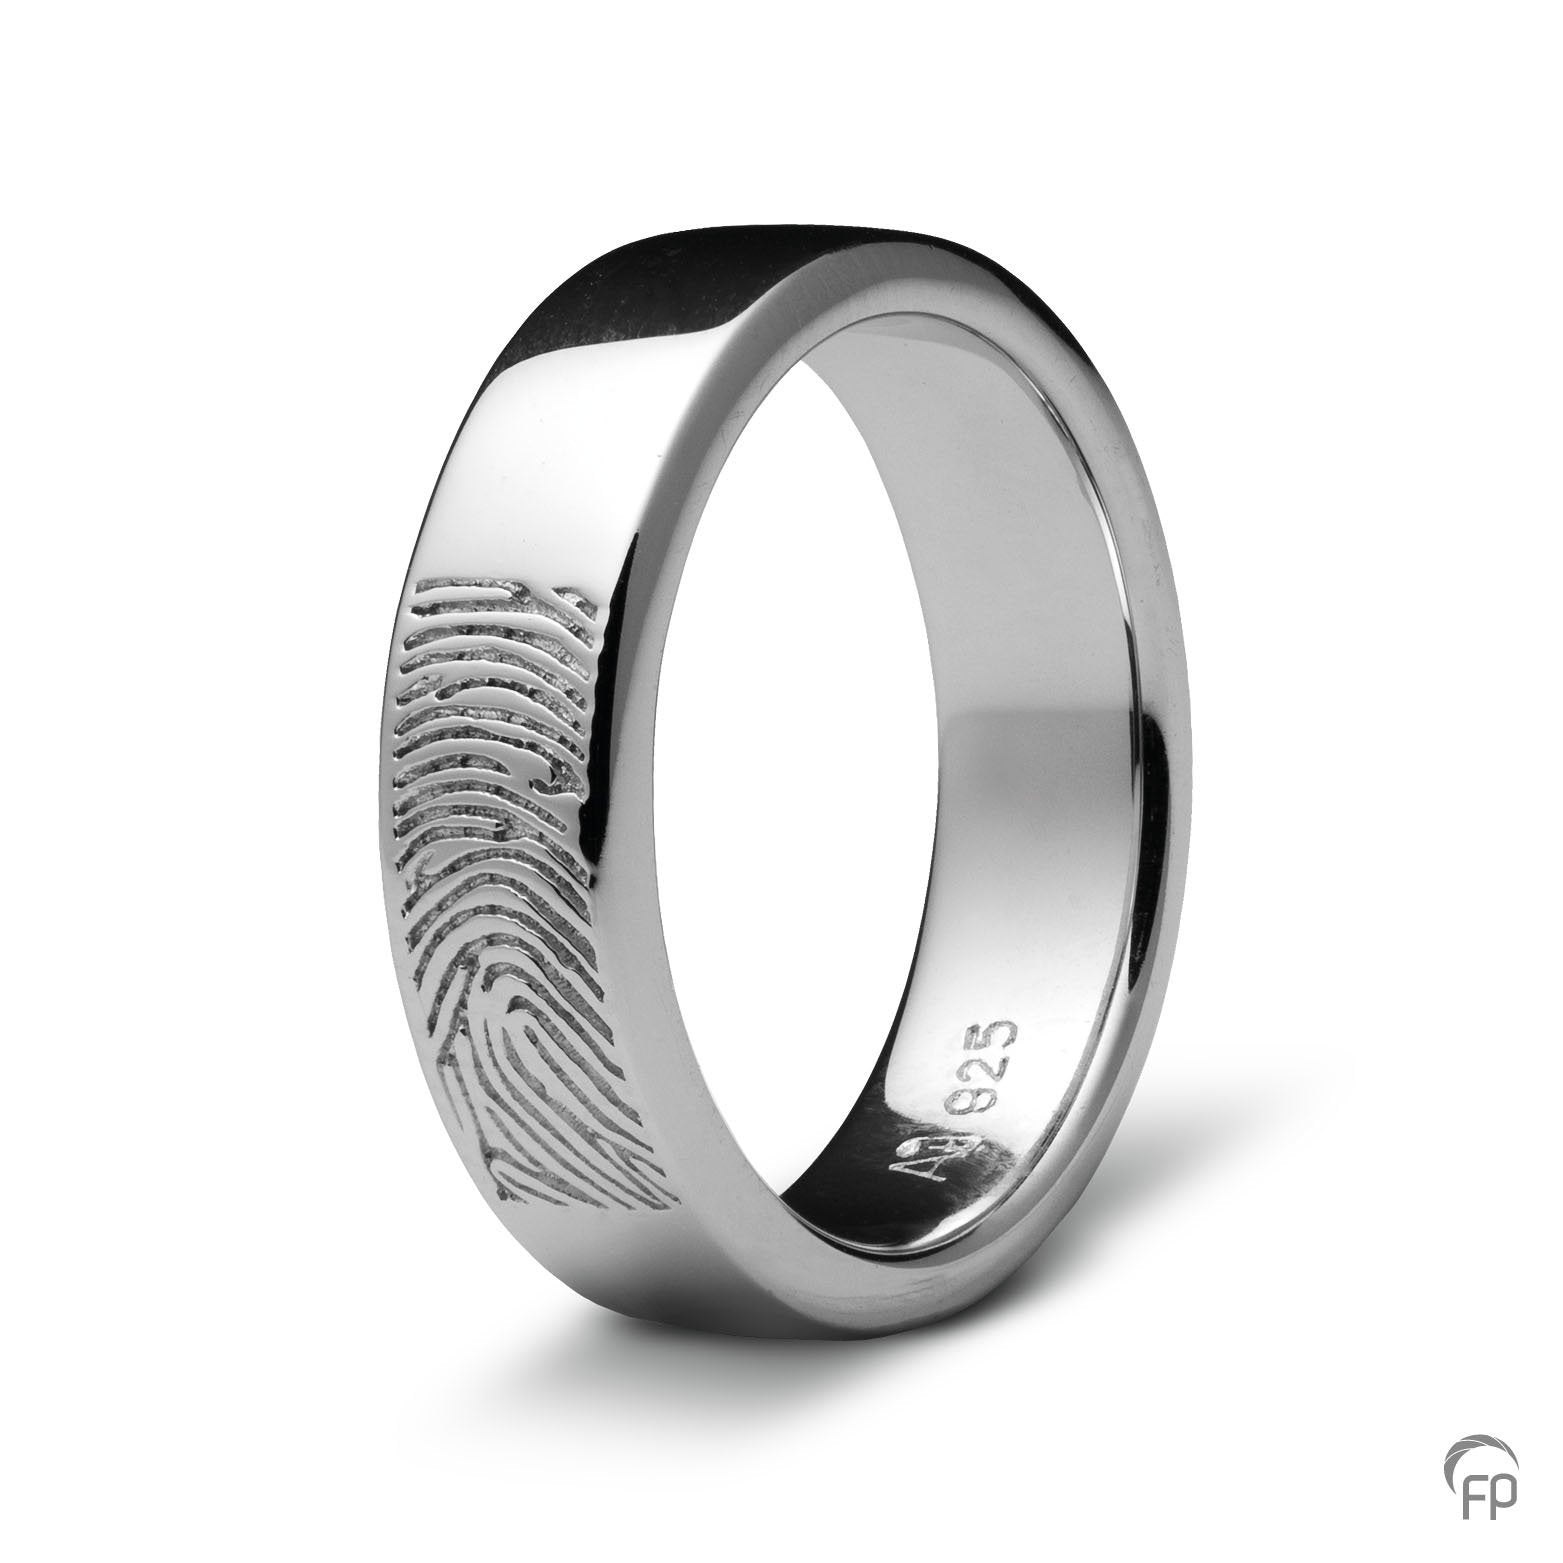 Deze ring van 7 mm breedte met vingerafdruk, heeft een stijlvol en strak design. Het is een tijdloos gedenksieraad met een afwerking naar keuze in glans of matte look. 